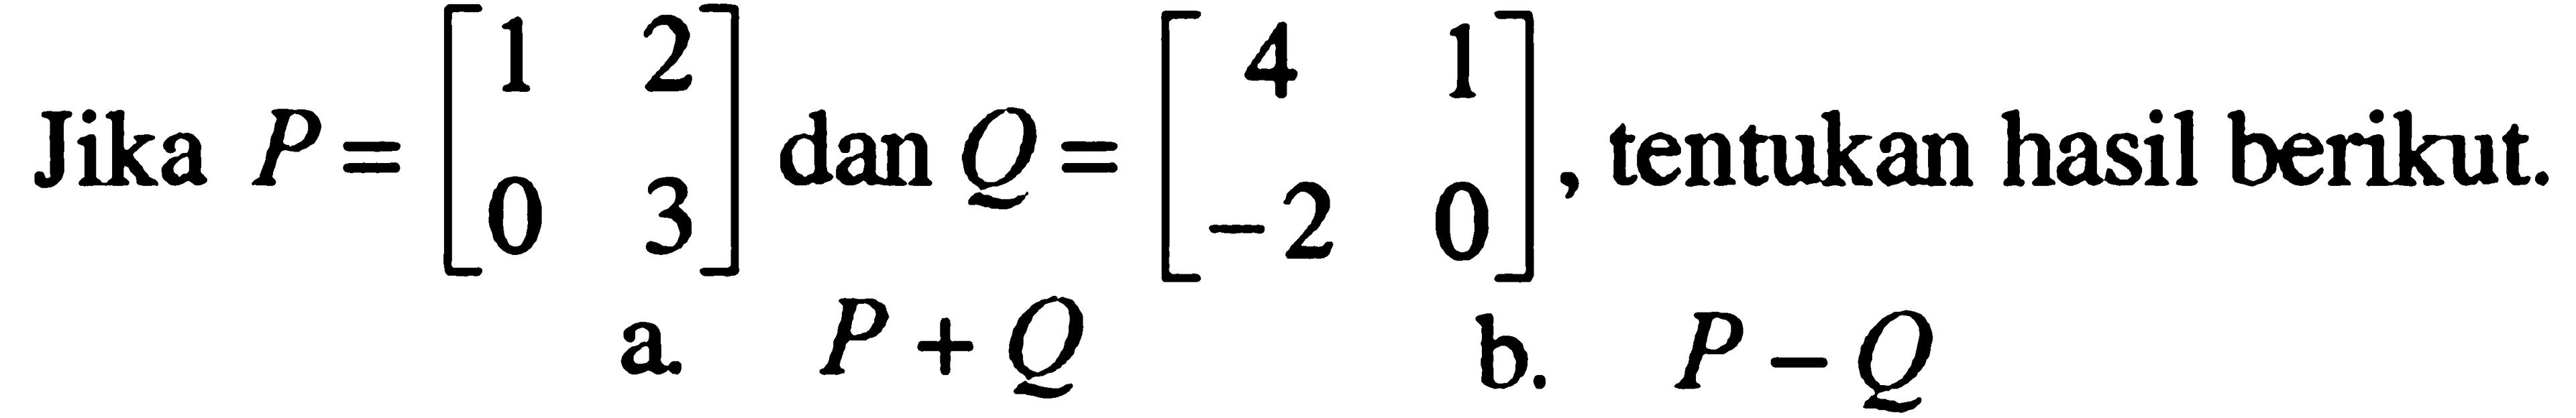 Jika P=[1 2 0 3] dan Q=[4 1 -2 0], tentukan hasil berikut. a. P+Q b. P-Q